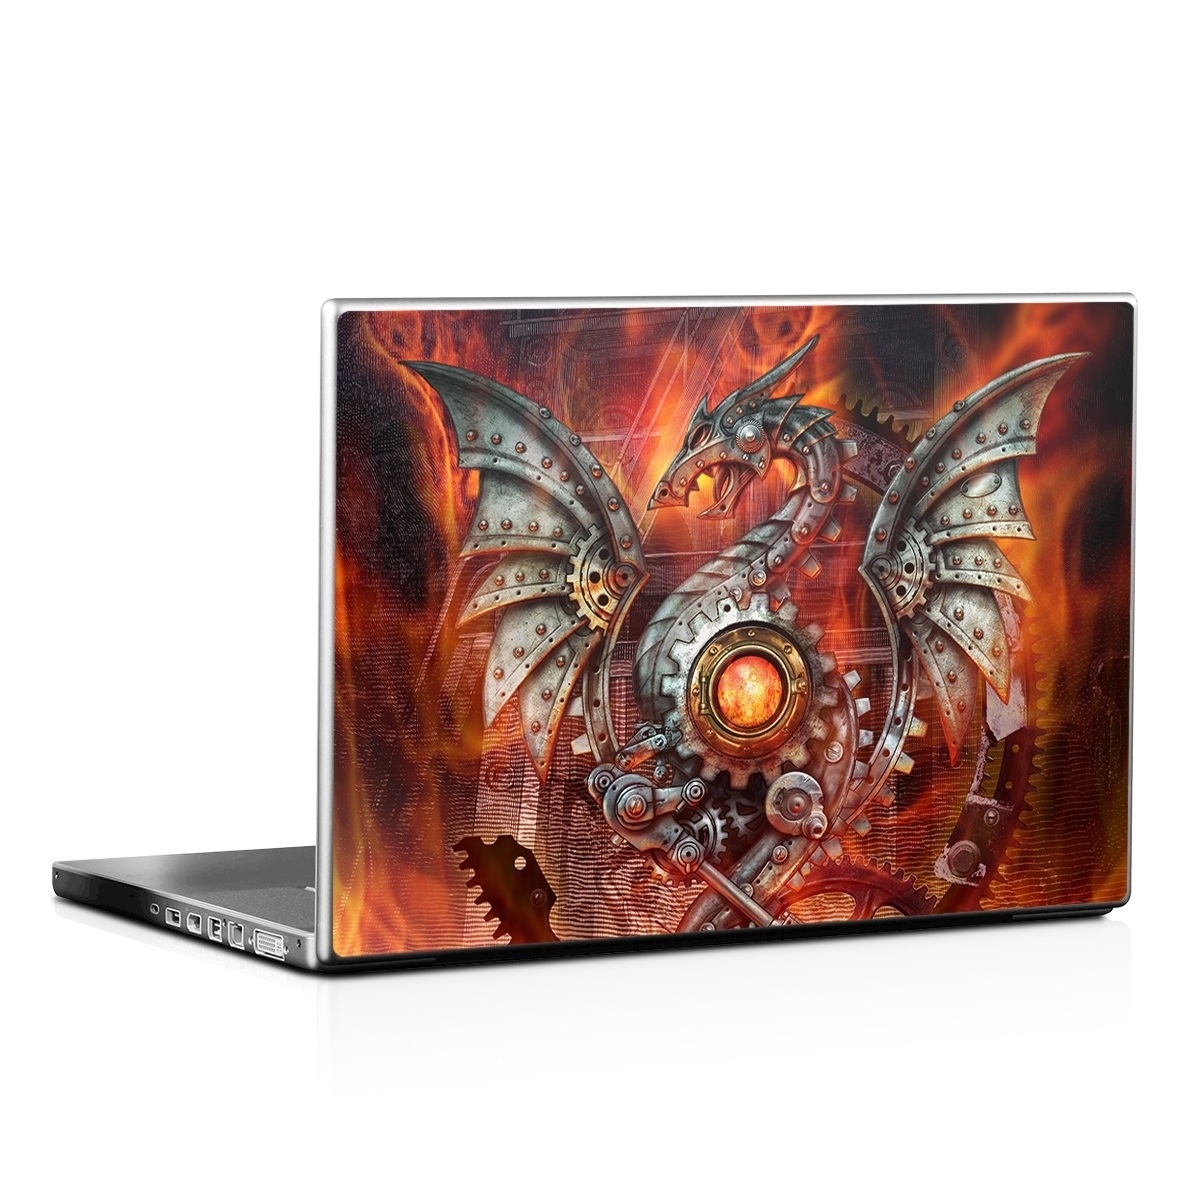 Laptop Skin - Furnace Dragon (Image 1)